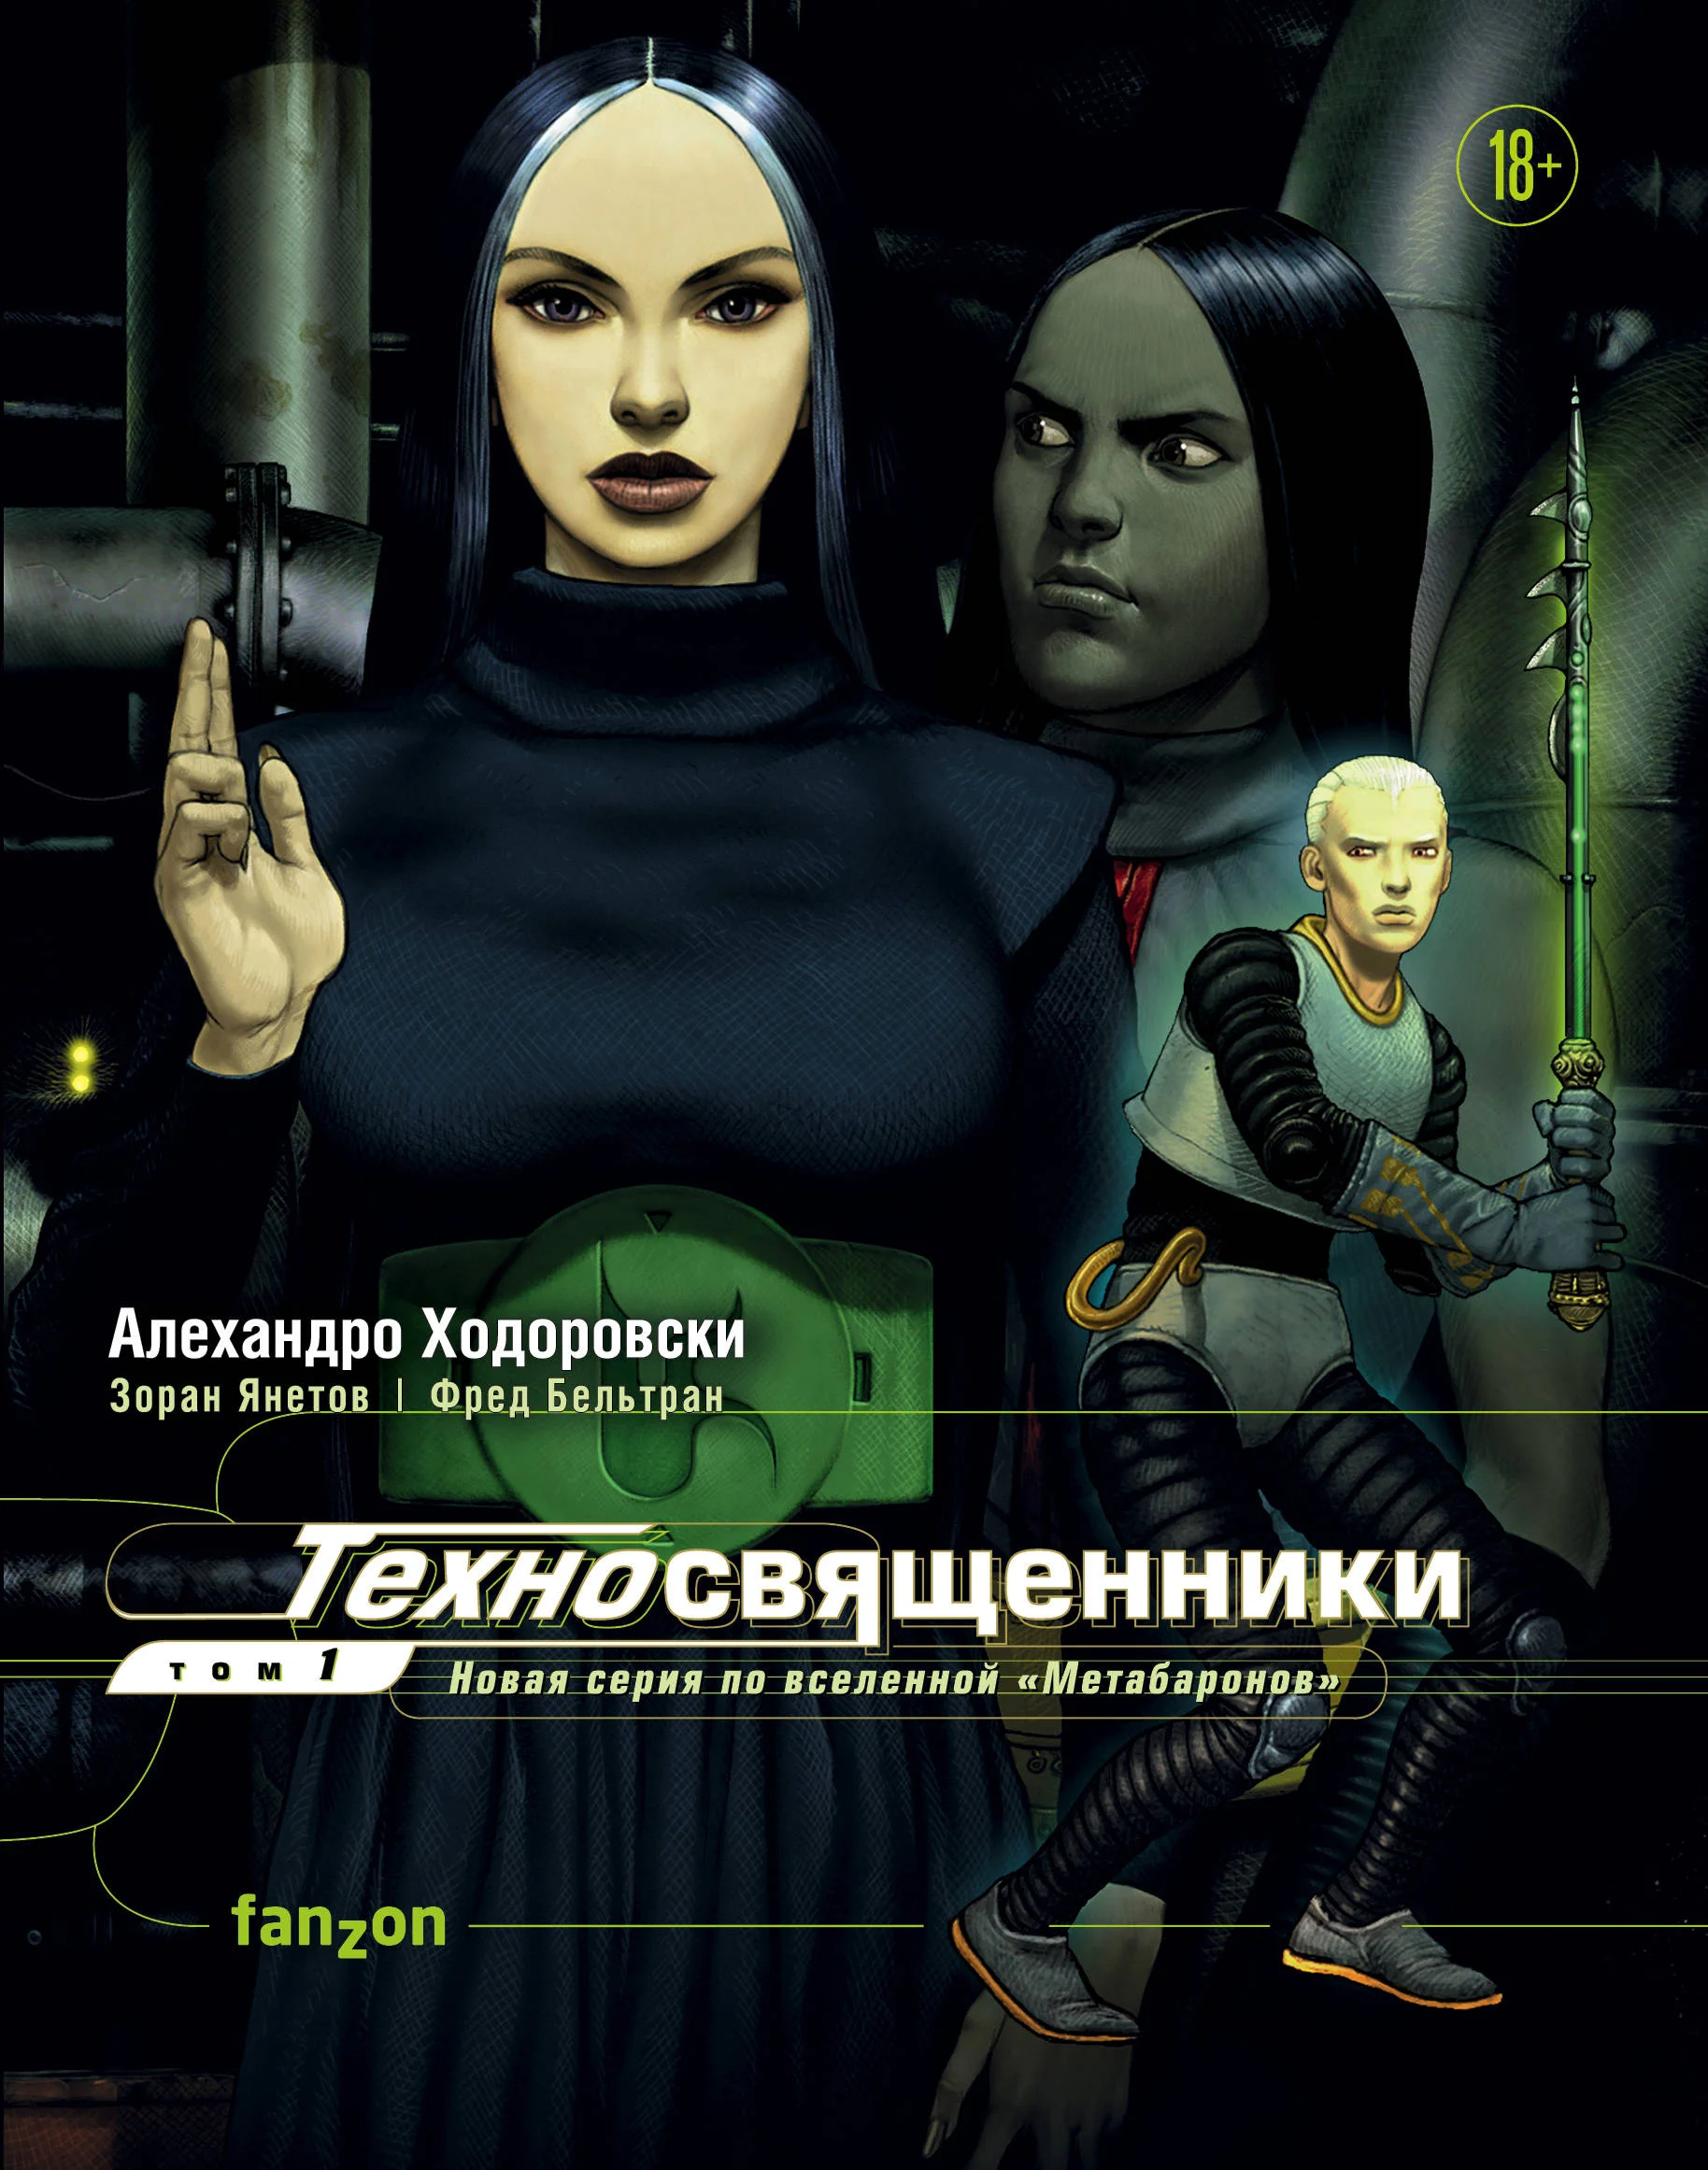 Что почитать из киберпанковских комиксов, изданных в России? - фото 4